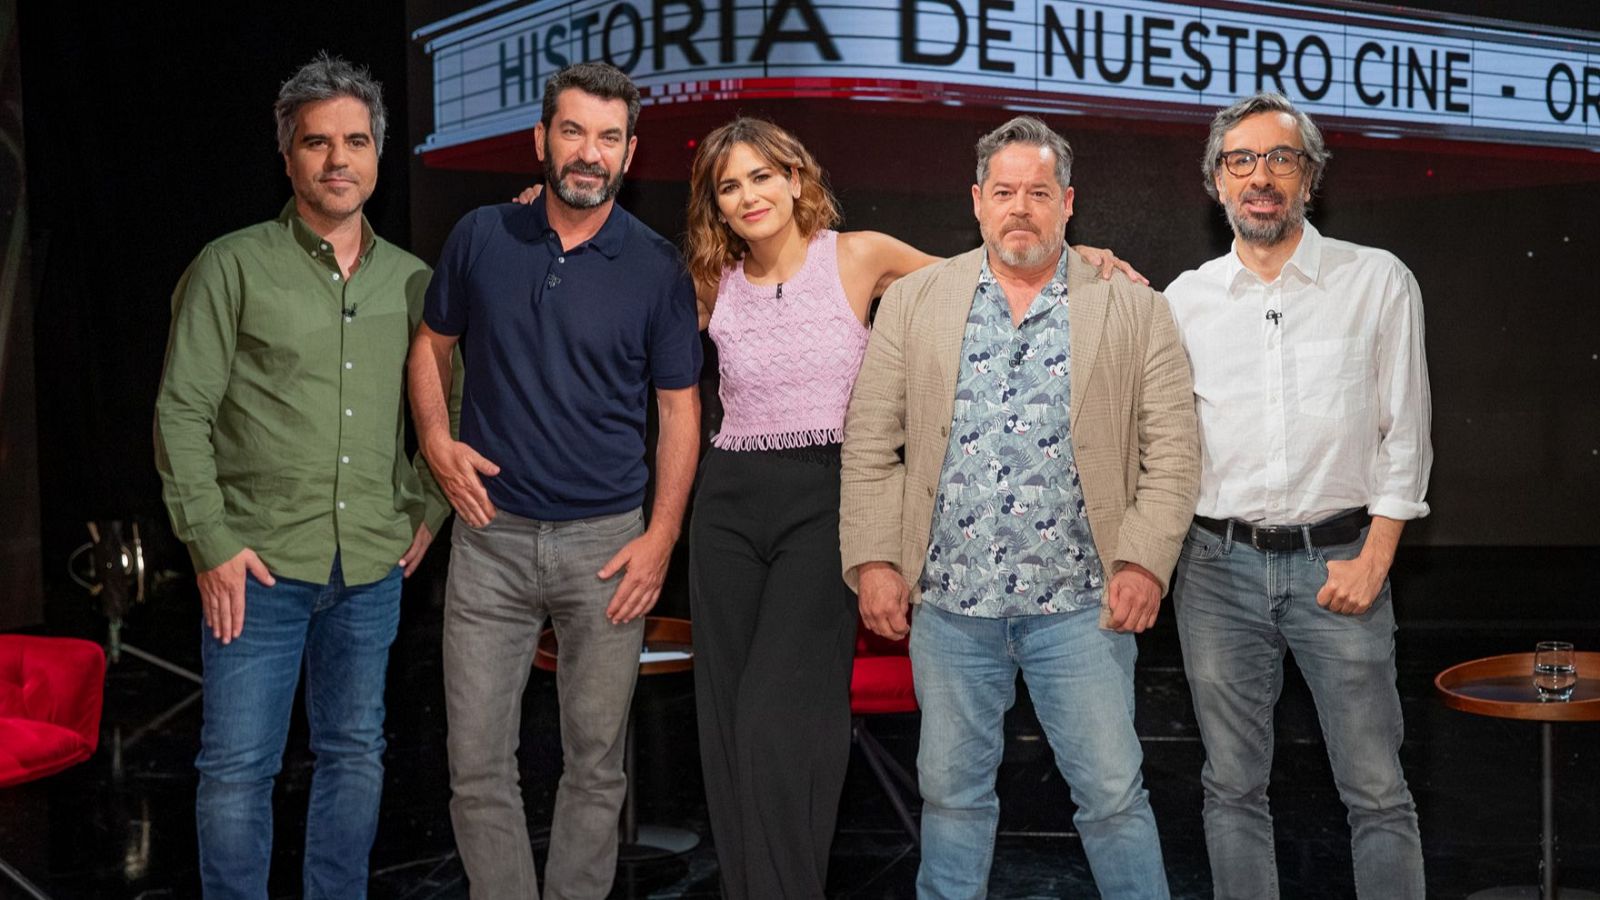 Ernesto Sevilla, Arturo Valls, Jorge Sanz y Javier Ocaña, con Elena S Sánchez en 'Historia de nuestro cine'